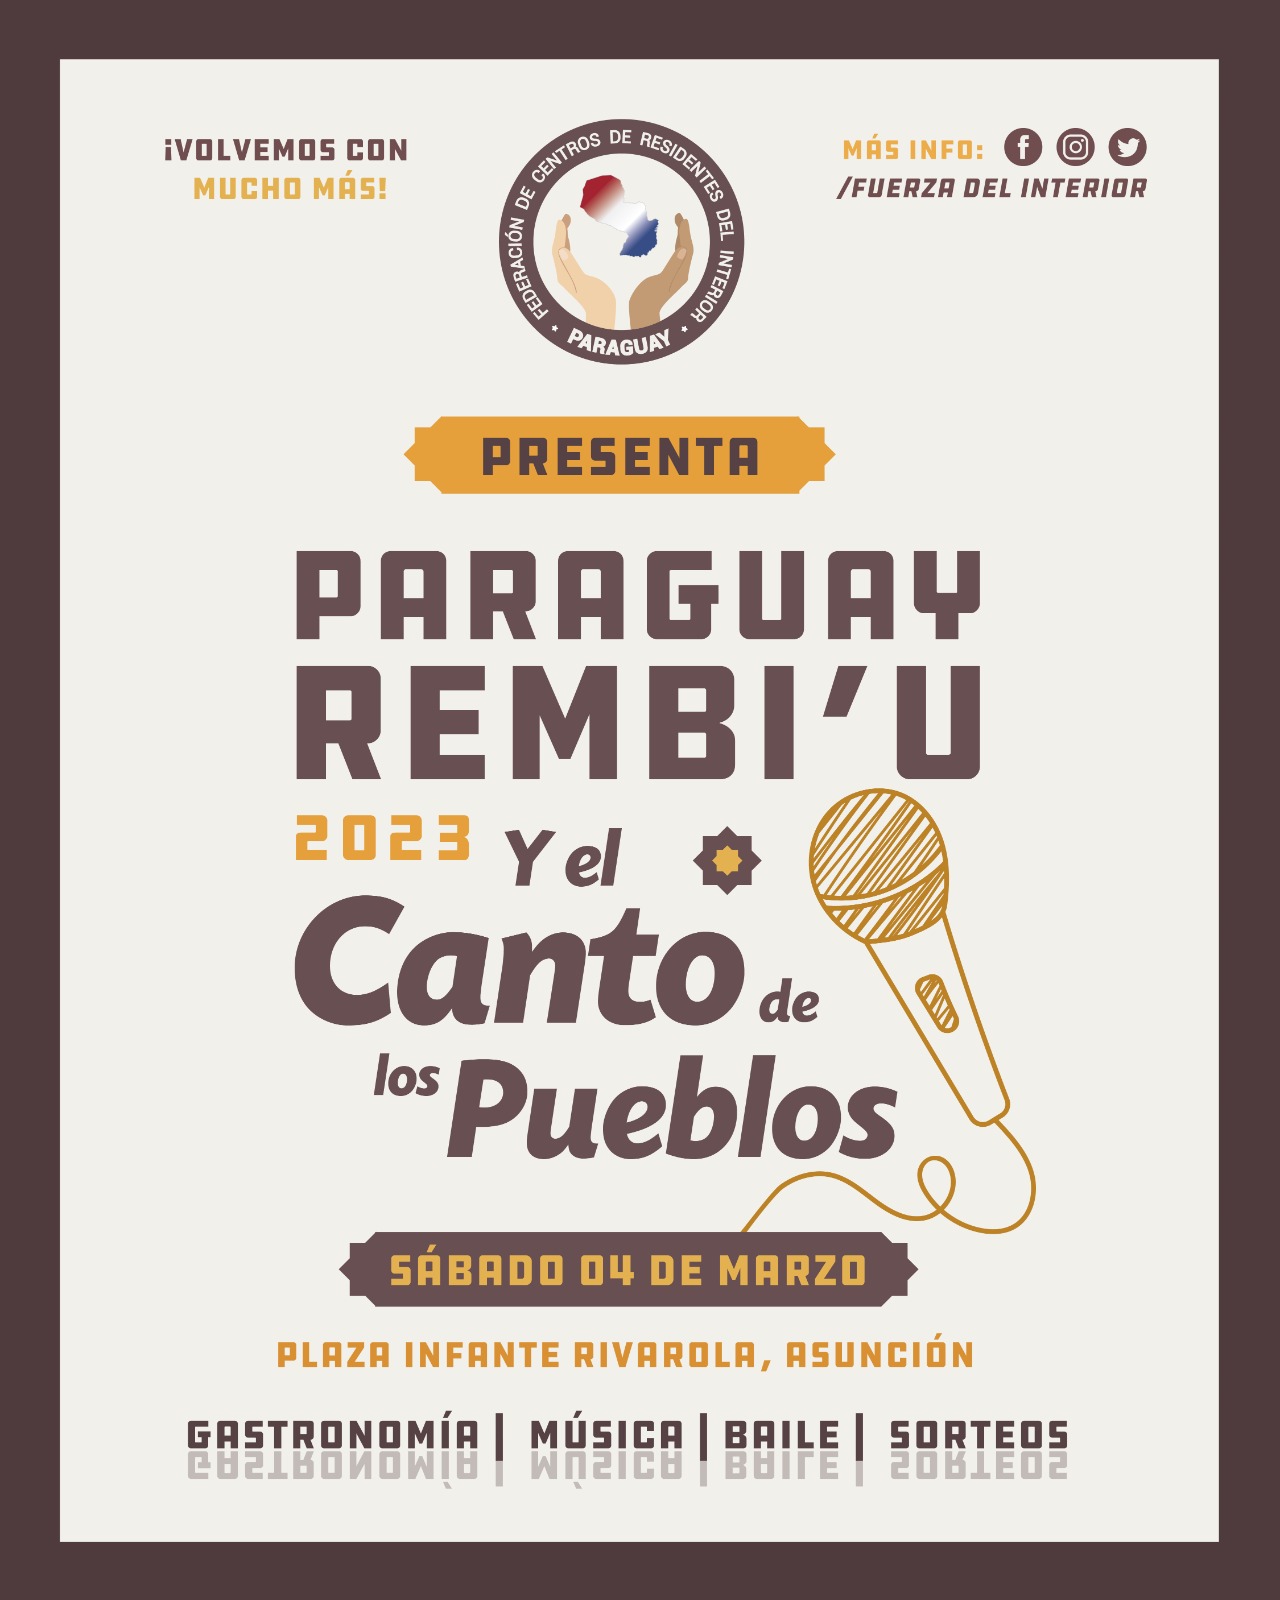 Llega la 3° edición de la feria gastronómica “Paraguay rembi’u y el canto de los pueblos” imagen